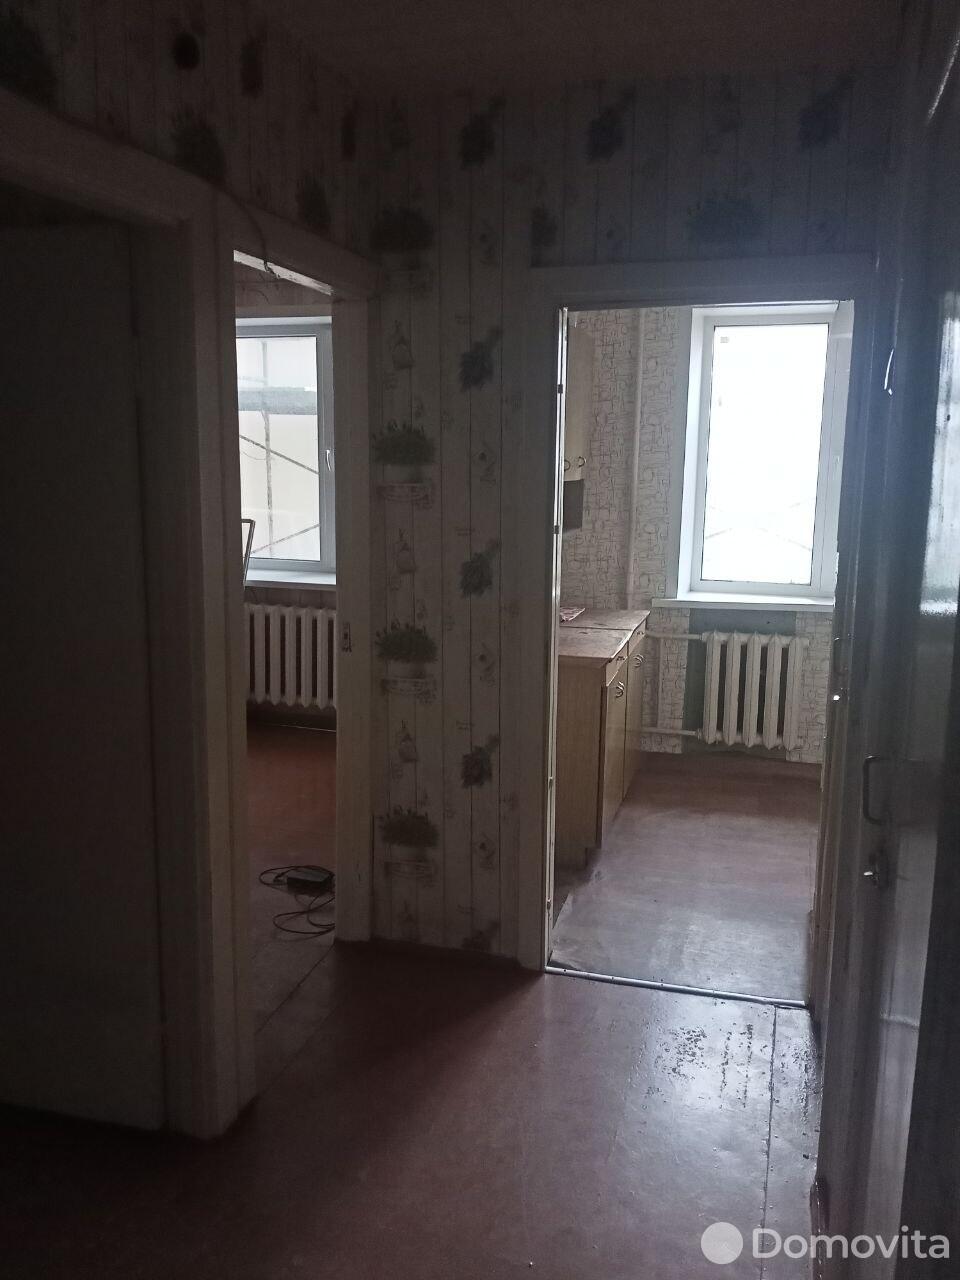 квартира, Несвиж, ул. Ленинская, д. 153, стоимость продажи 89 474 р.